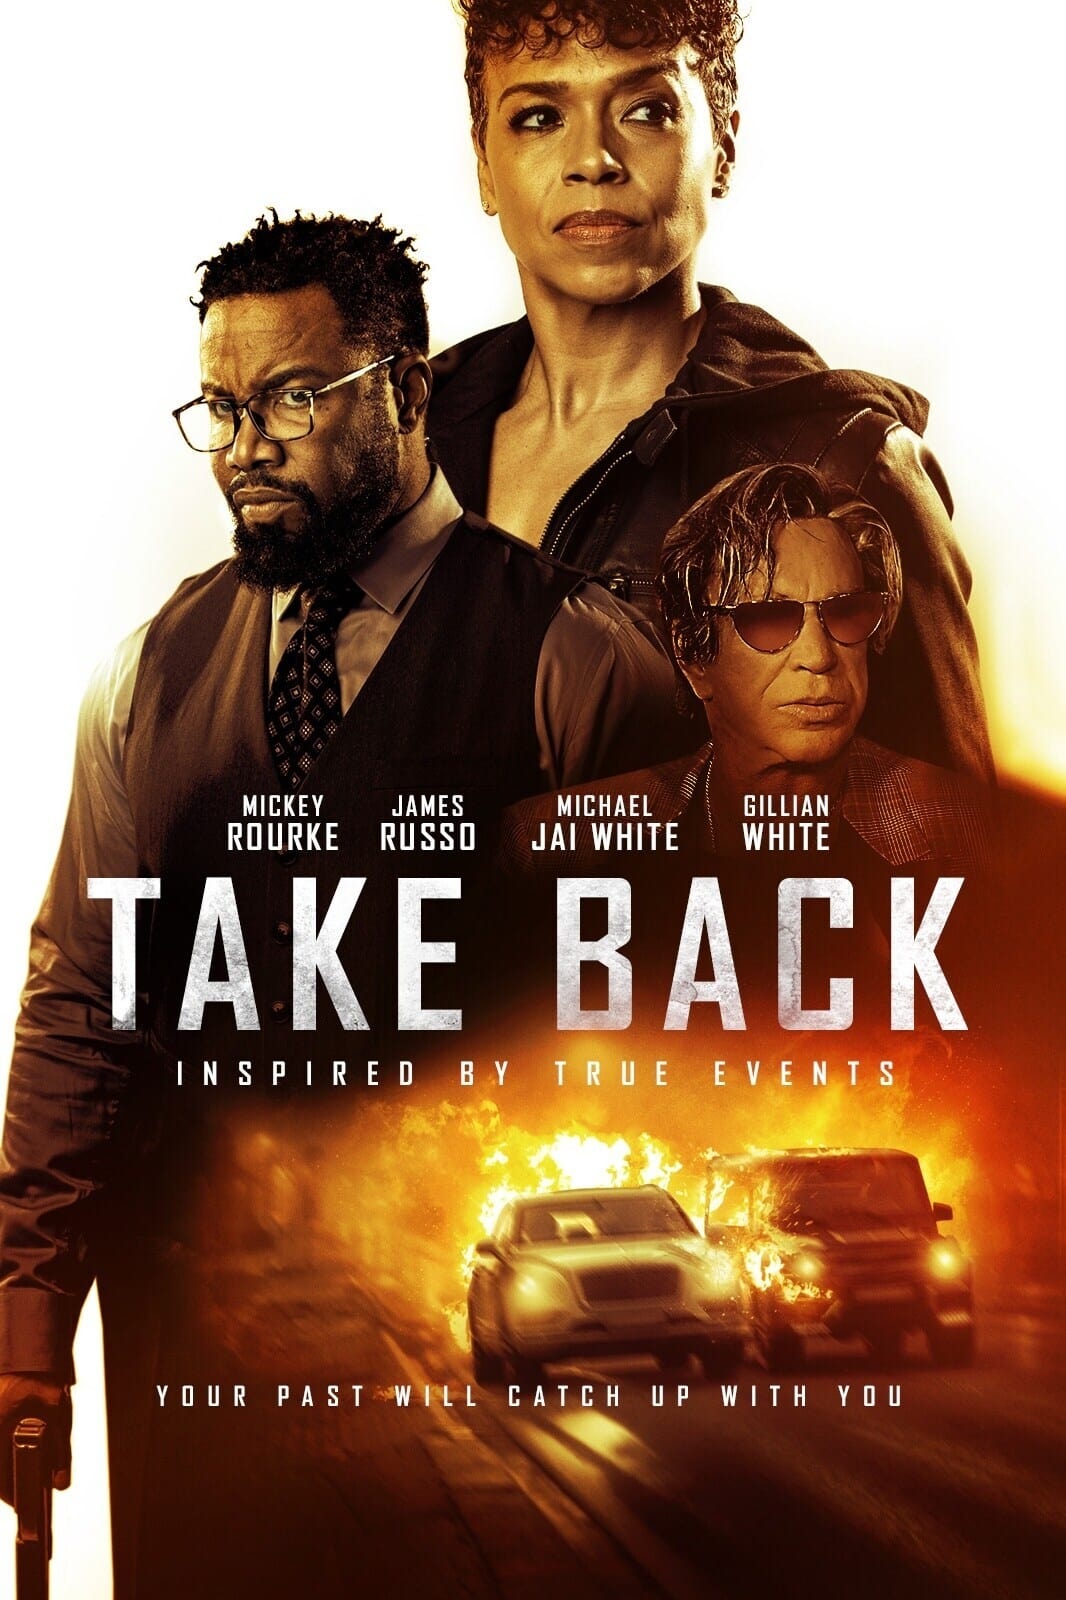 ดูหนังออนไลน์ Take Back (2021)